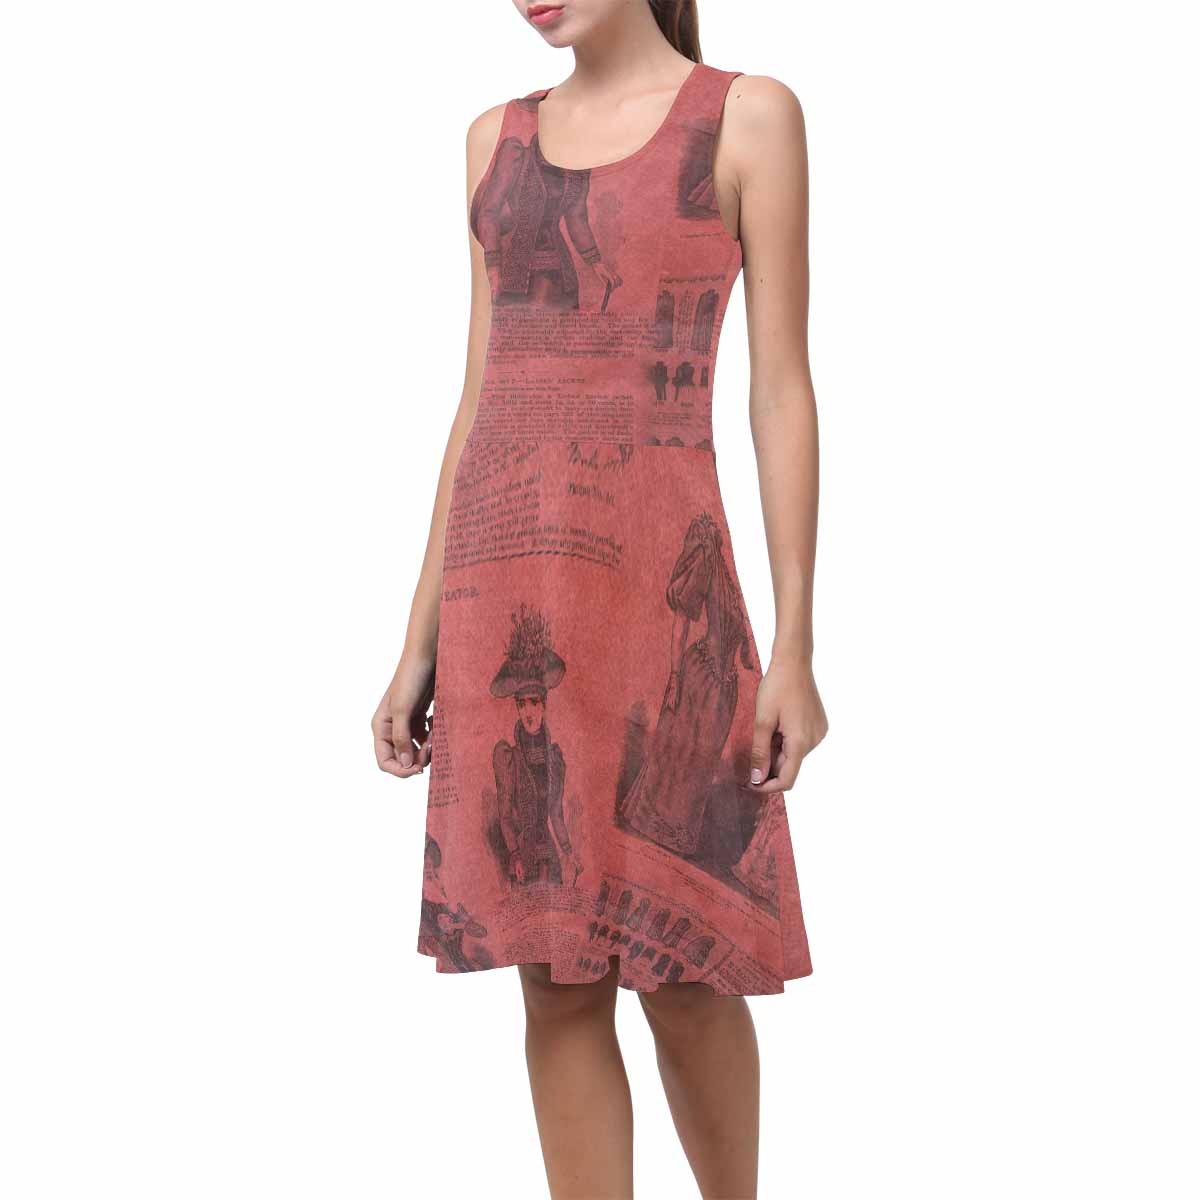 Antique General summer dress, MODEL 09534, design 37